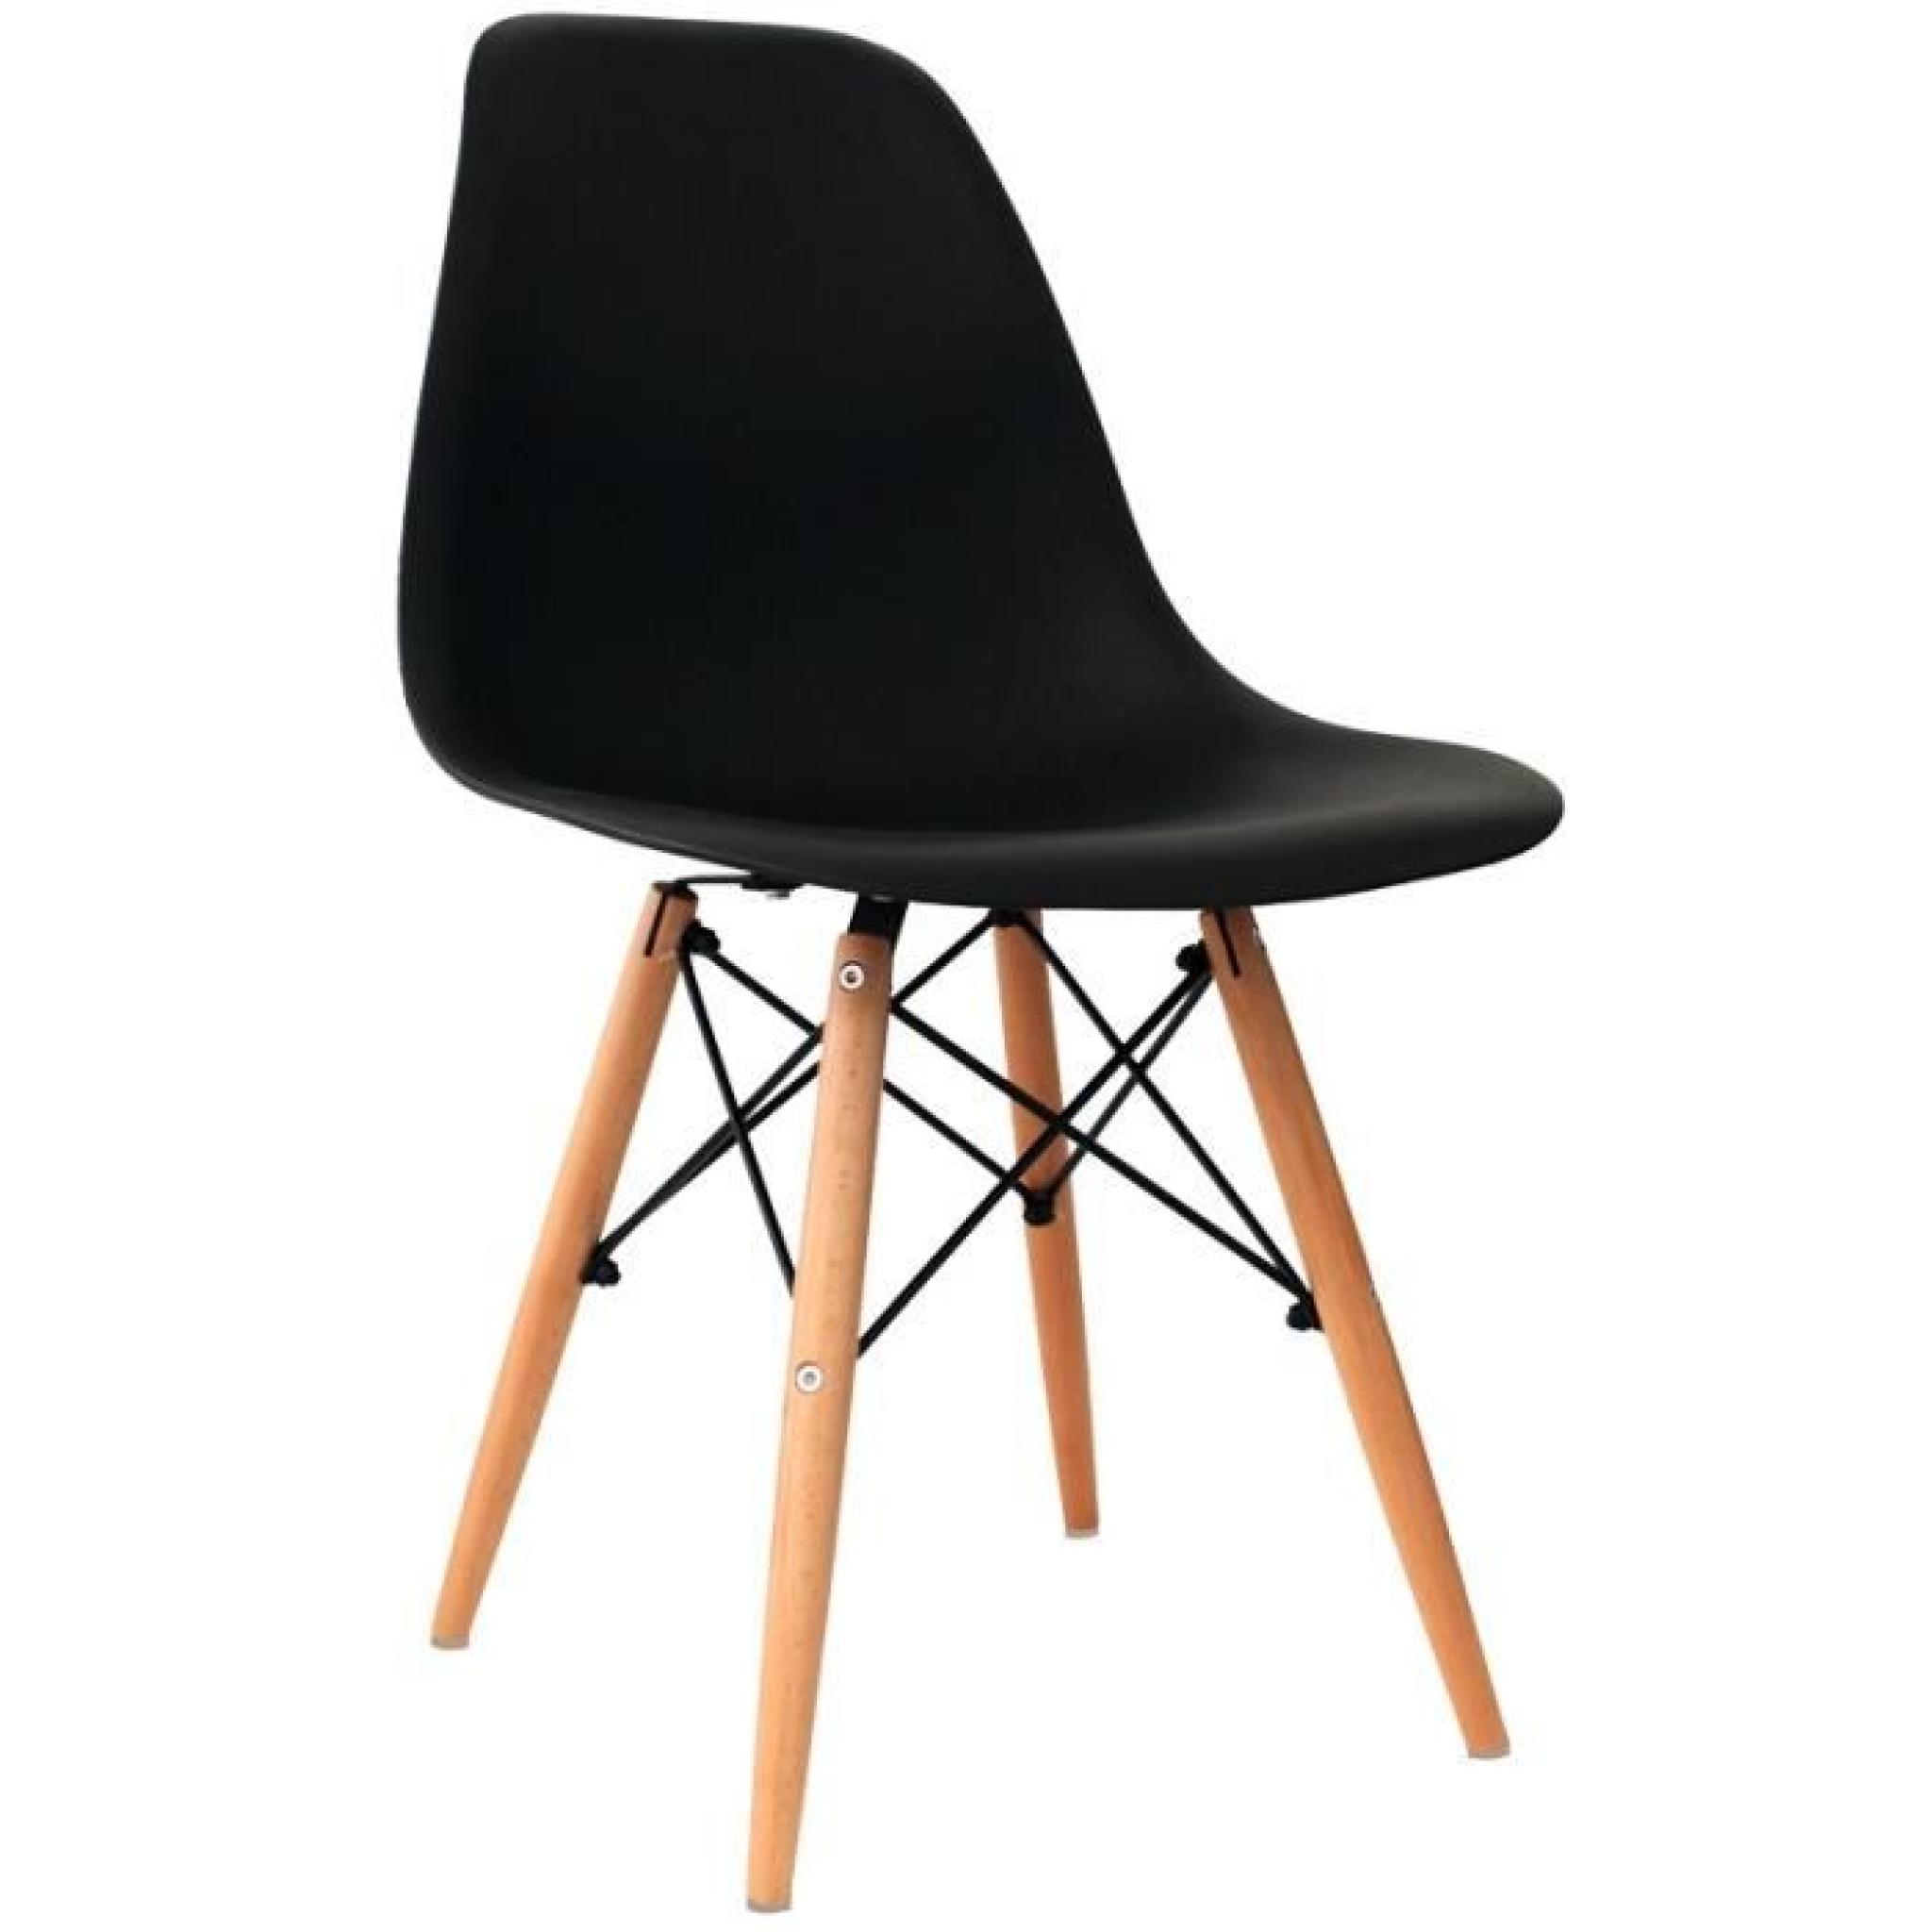 Chaise design noir pieds en bois RETRO lot de 4 pas cher